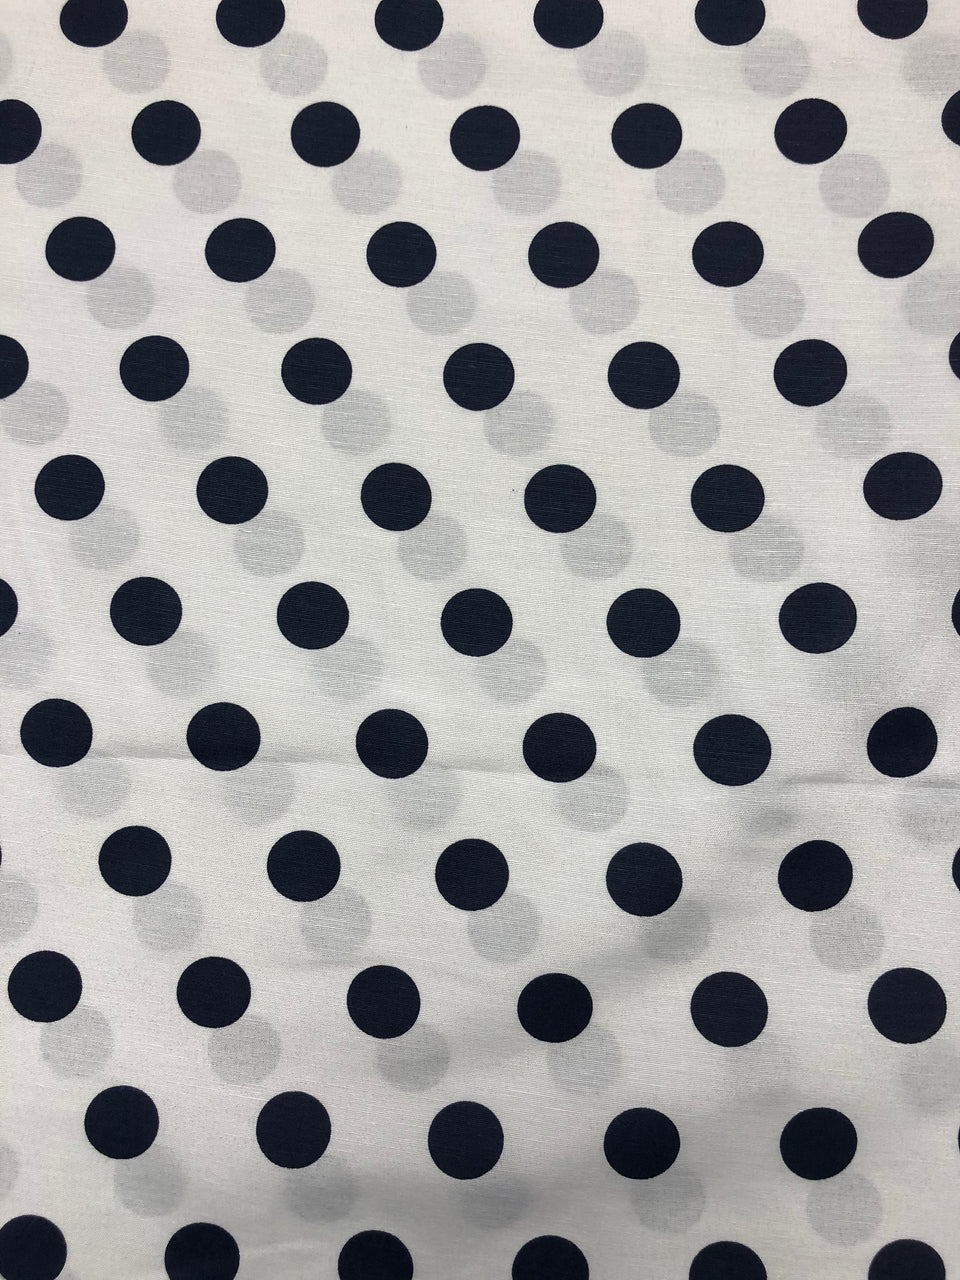 Polka Dot - White & Black (3/4")